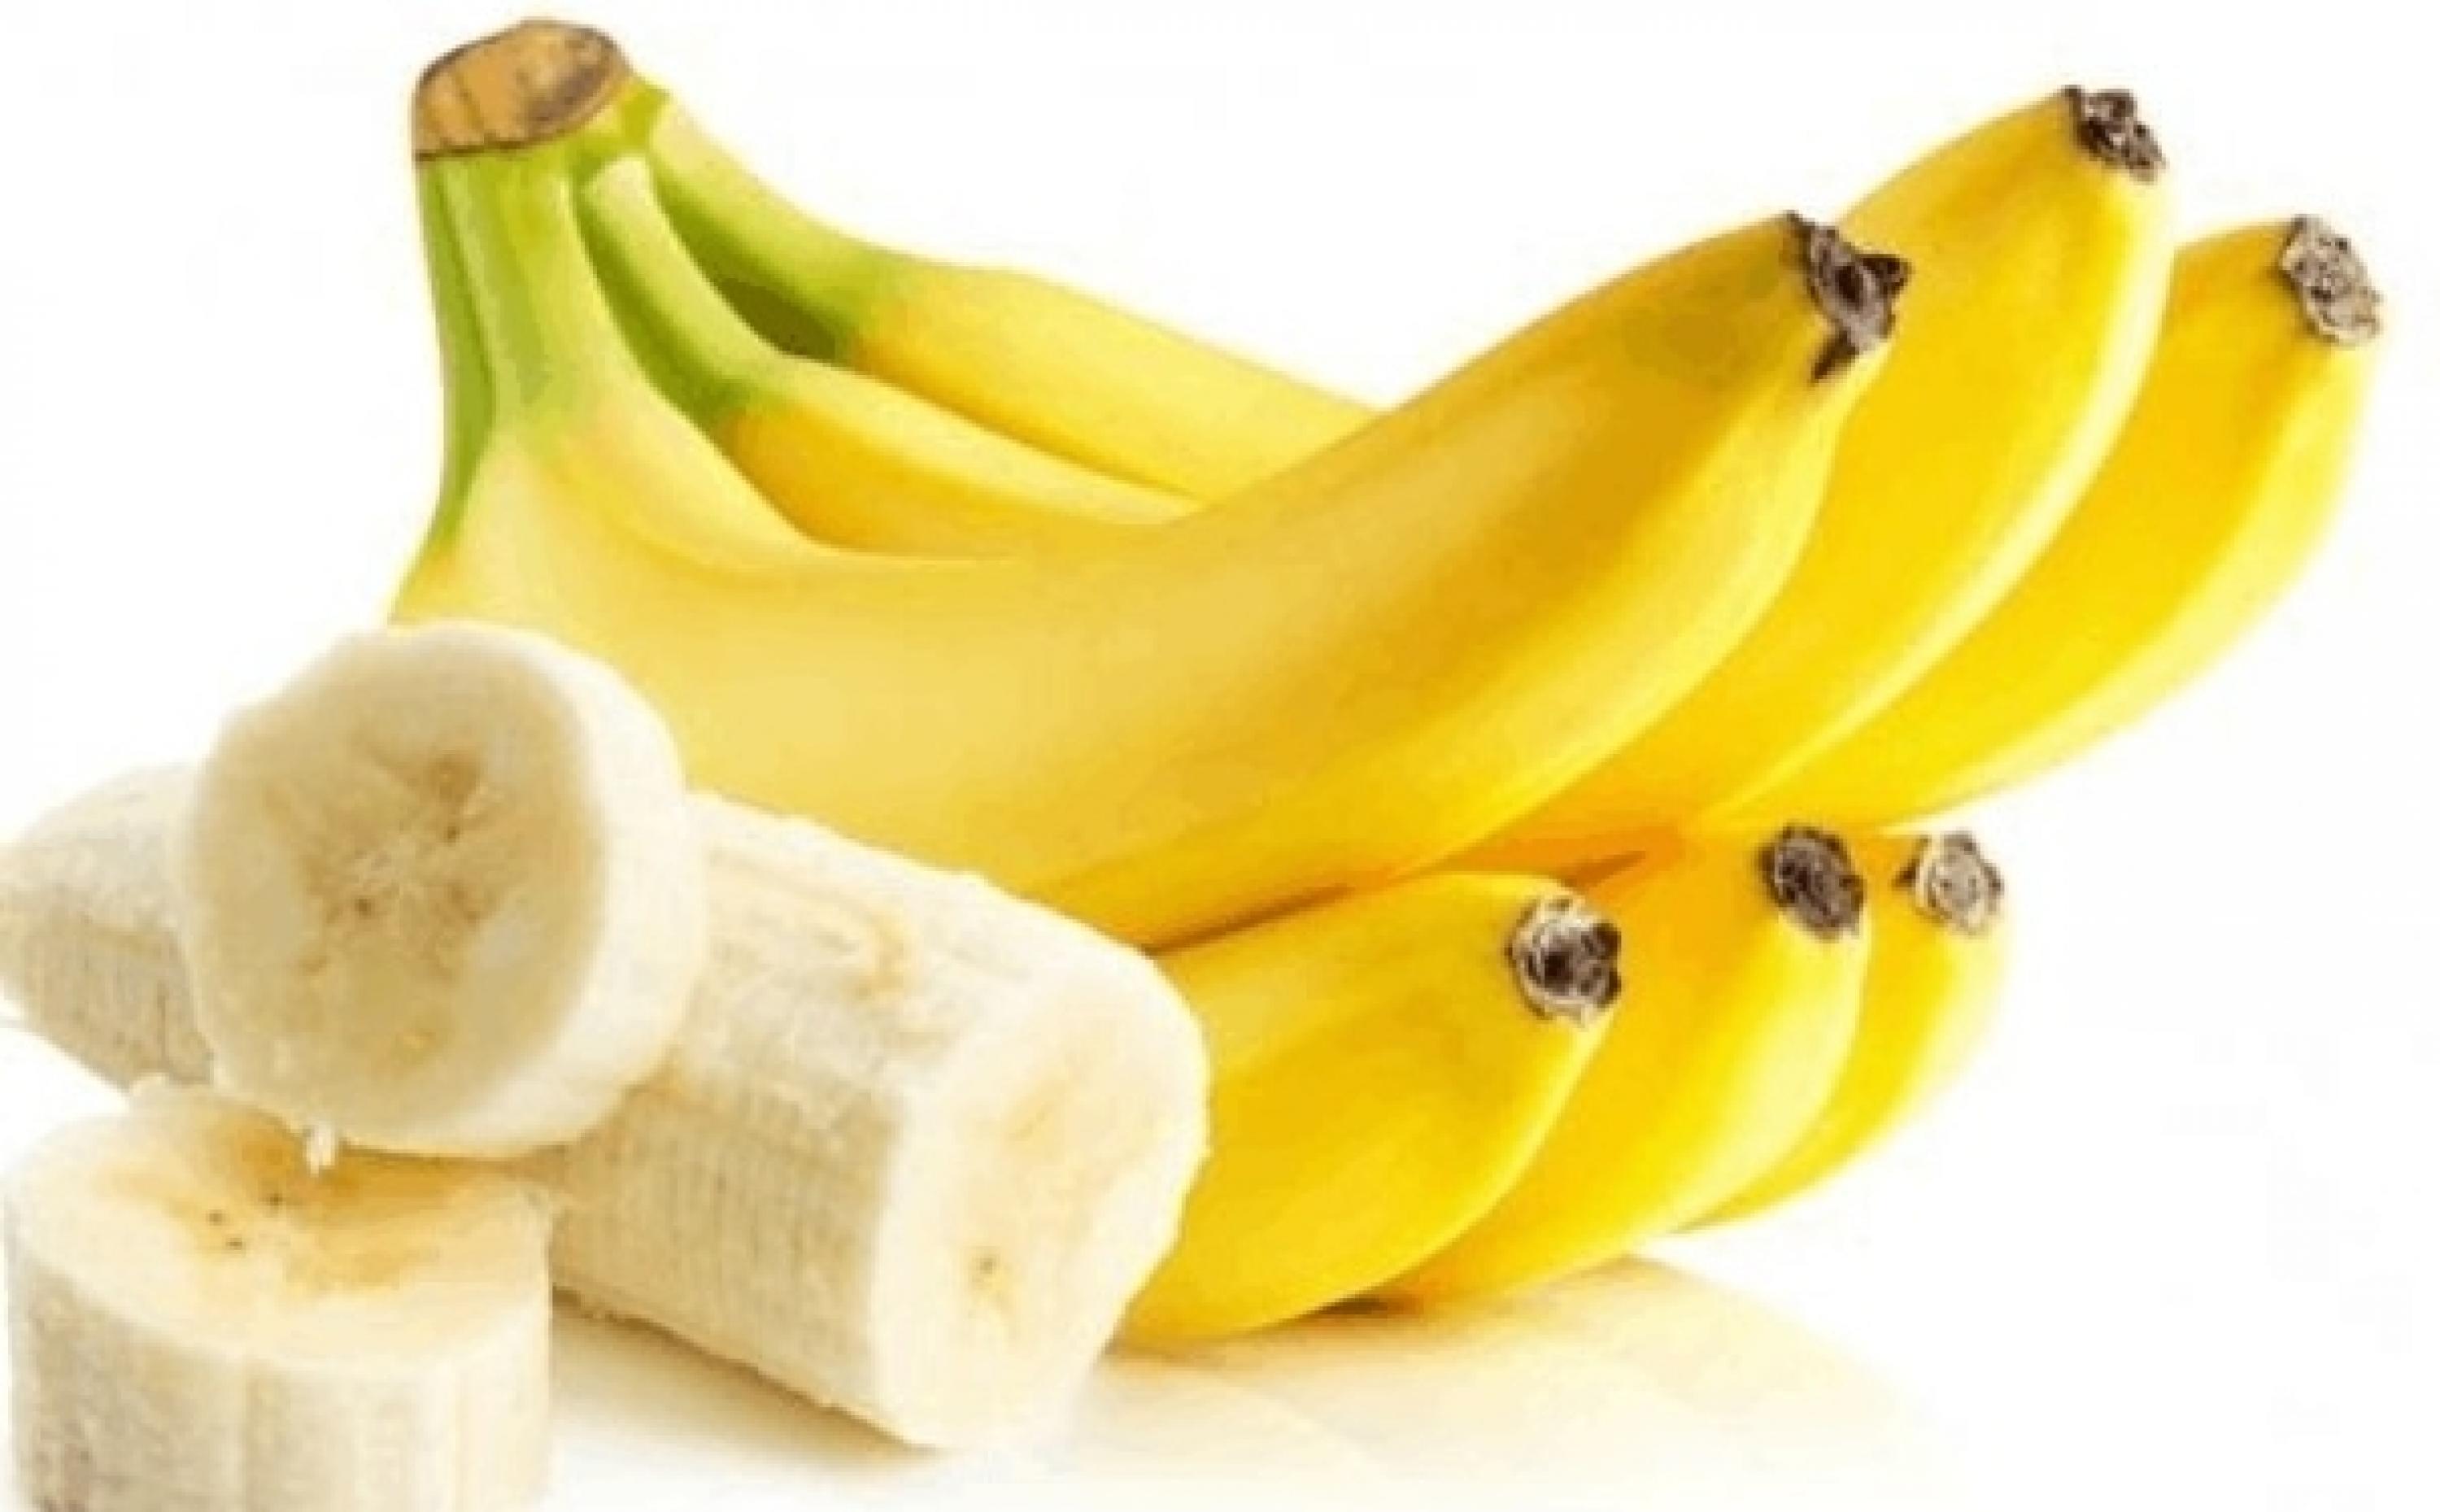 白领养生如何拯救亚健康?多吃这些水果和注意日常饮食